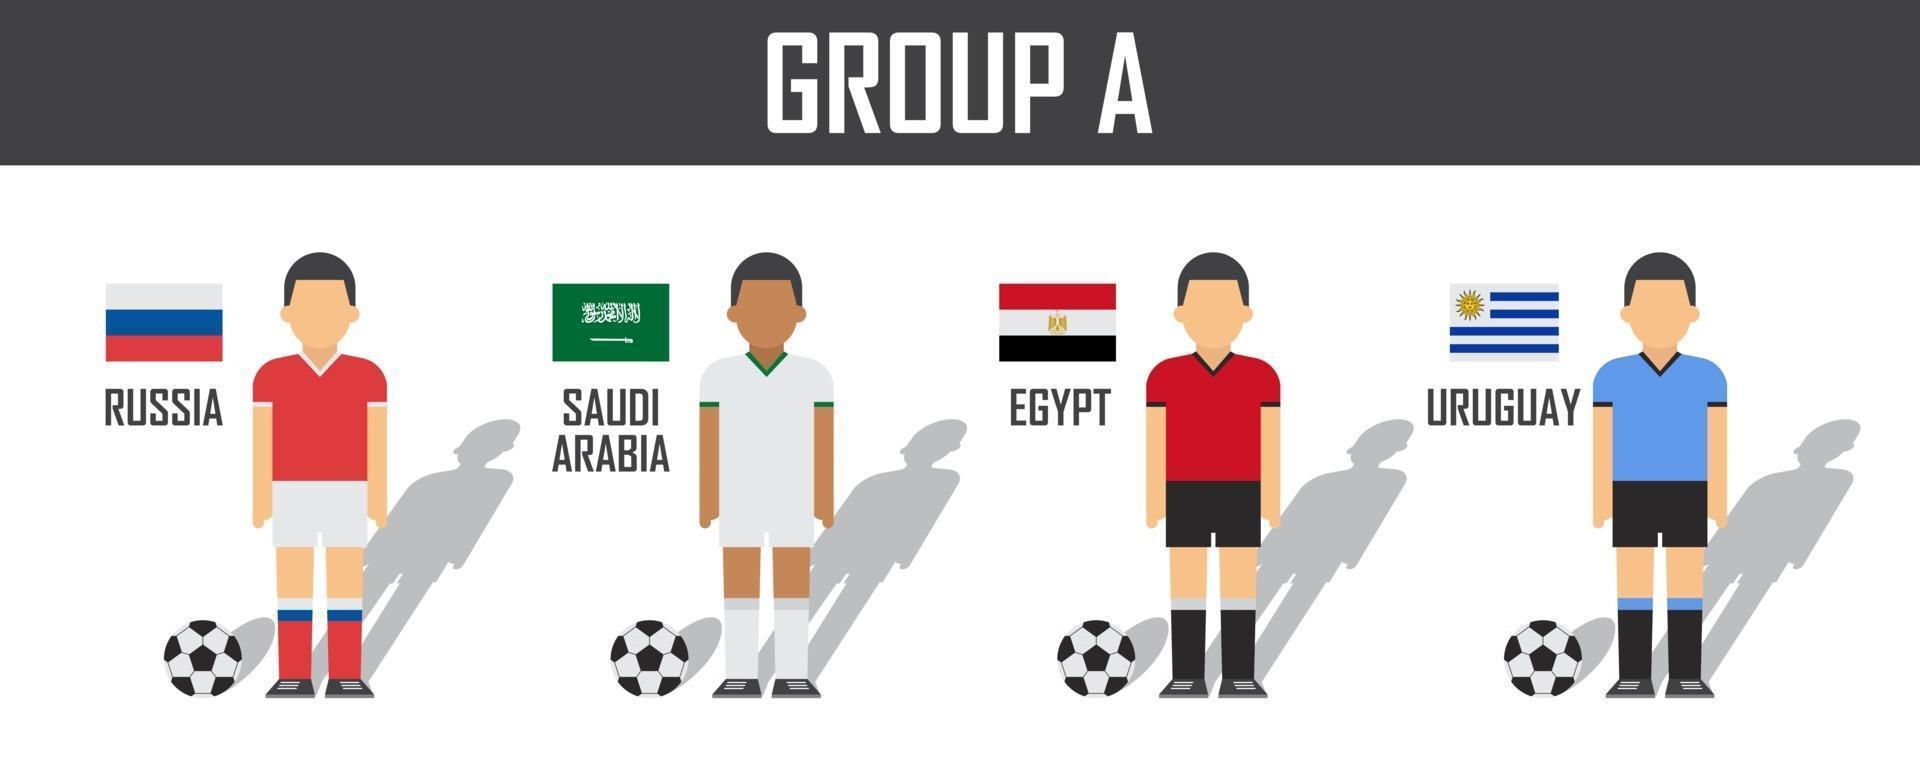 copa de fútbol 2018 equipo grupo a. futbolistas con uniforme de camiseta y banderas nacionales. vector para el torneo del campeonato mundial internacional.